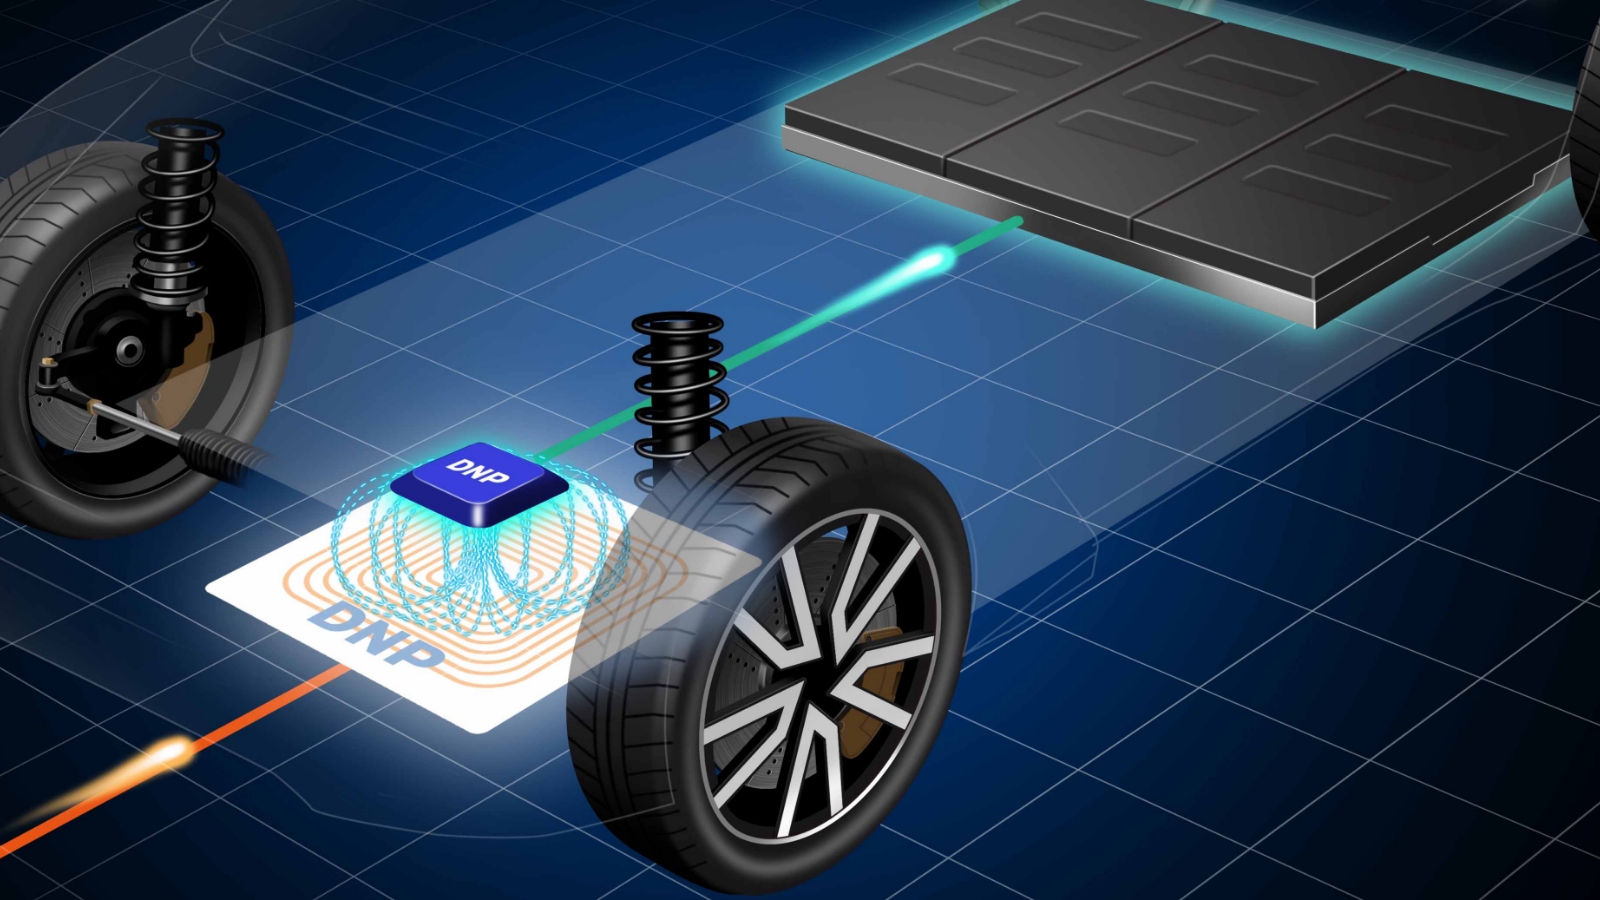 電気自動車が、シート型コイルユニットによって、地面に設置された装置から自動で充電する仕組みの説明図